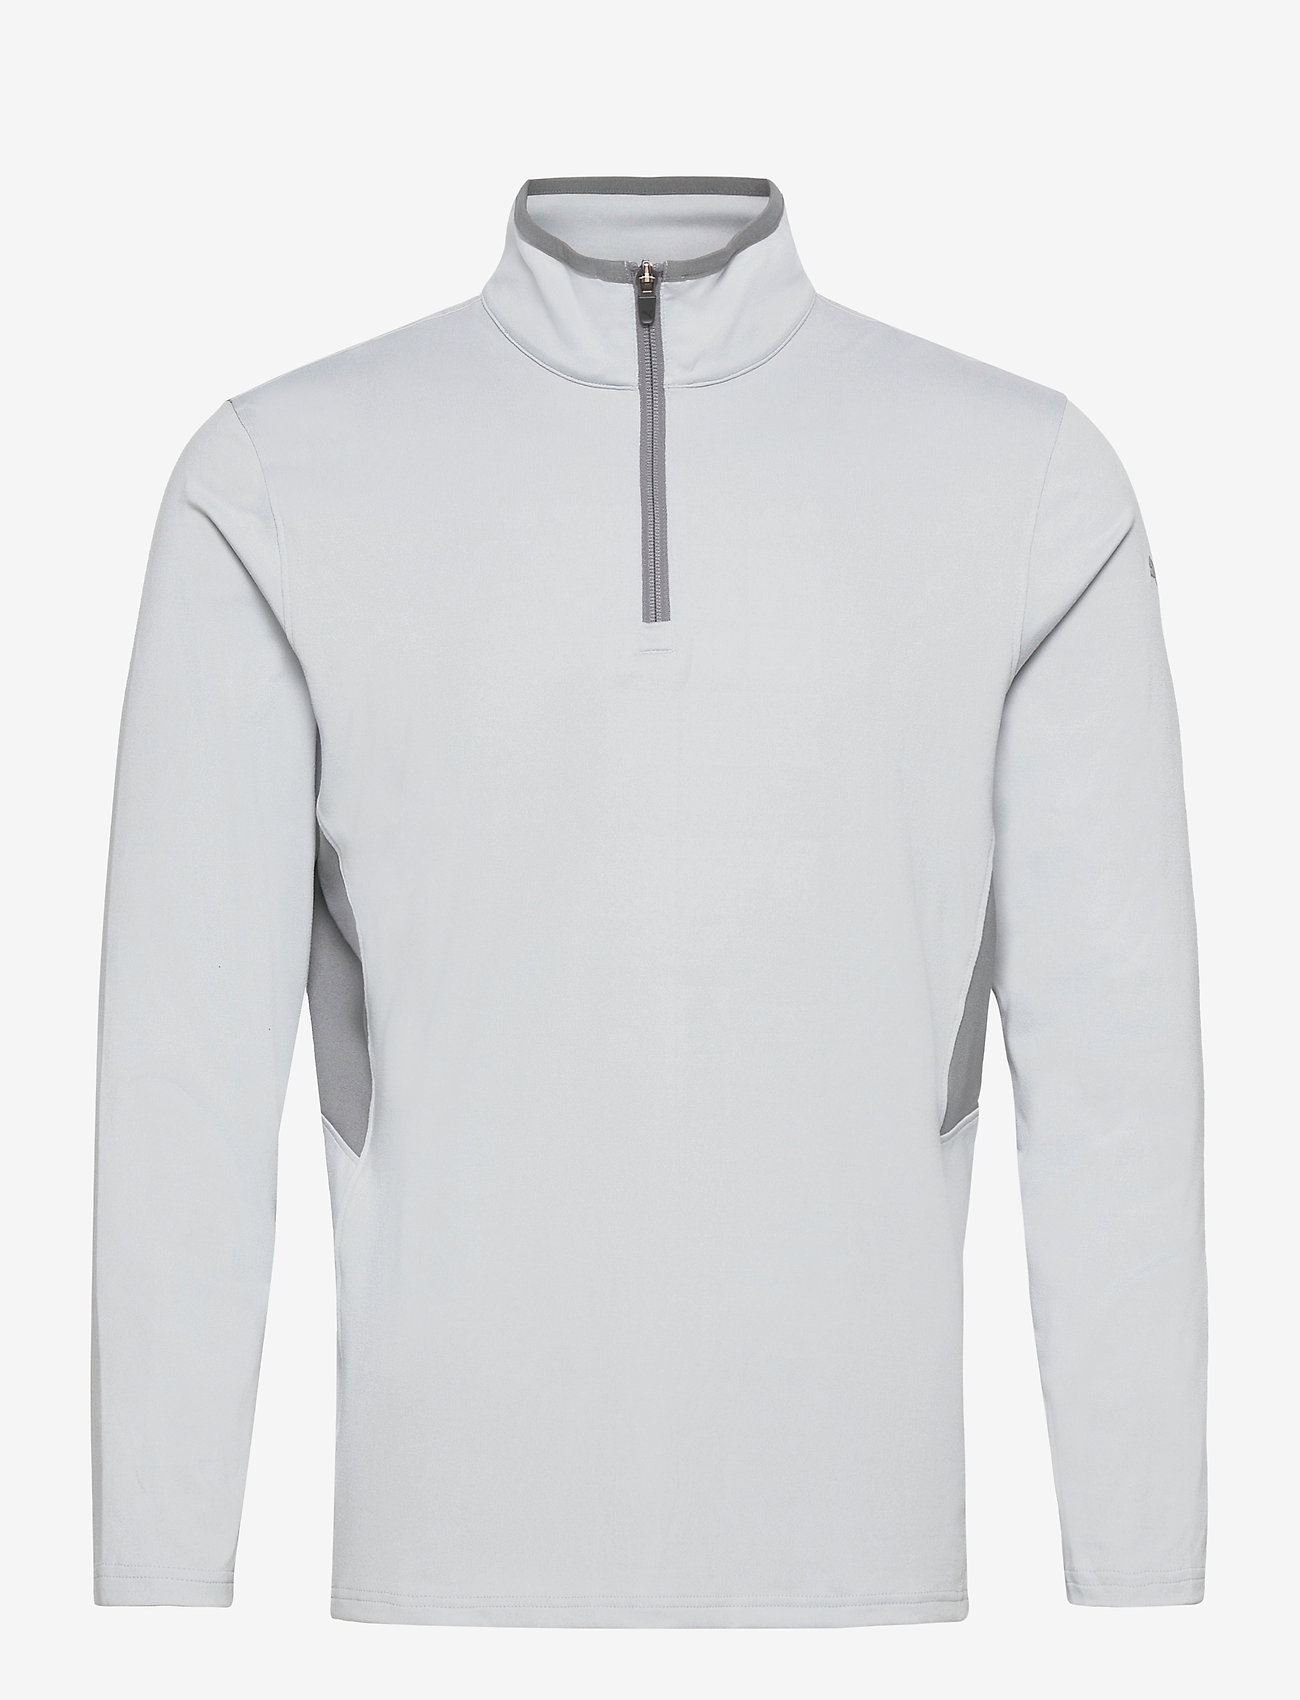 puma men's half-zip polyester hoodies